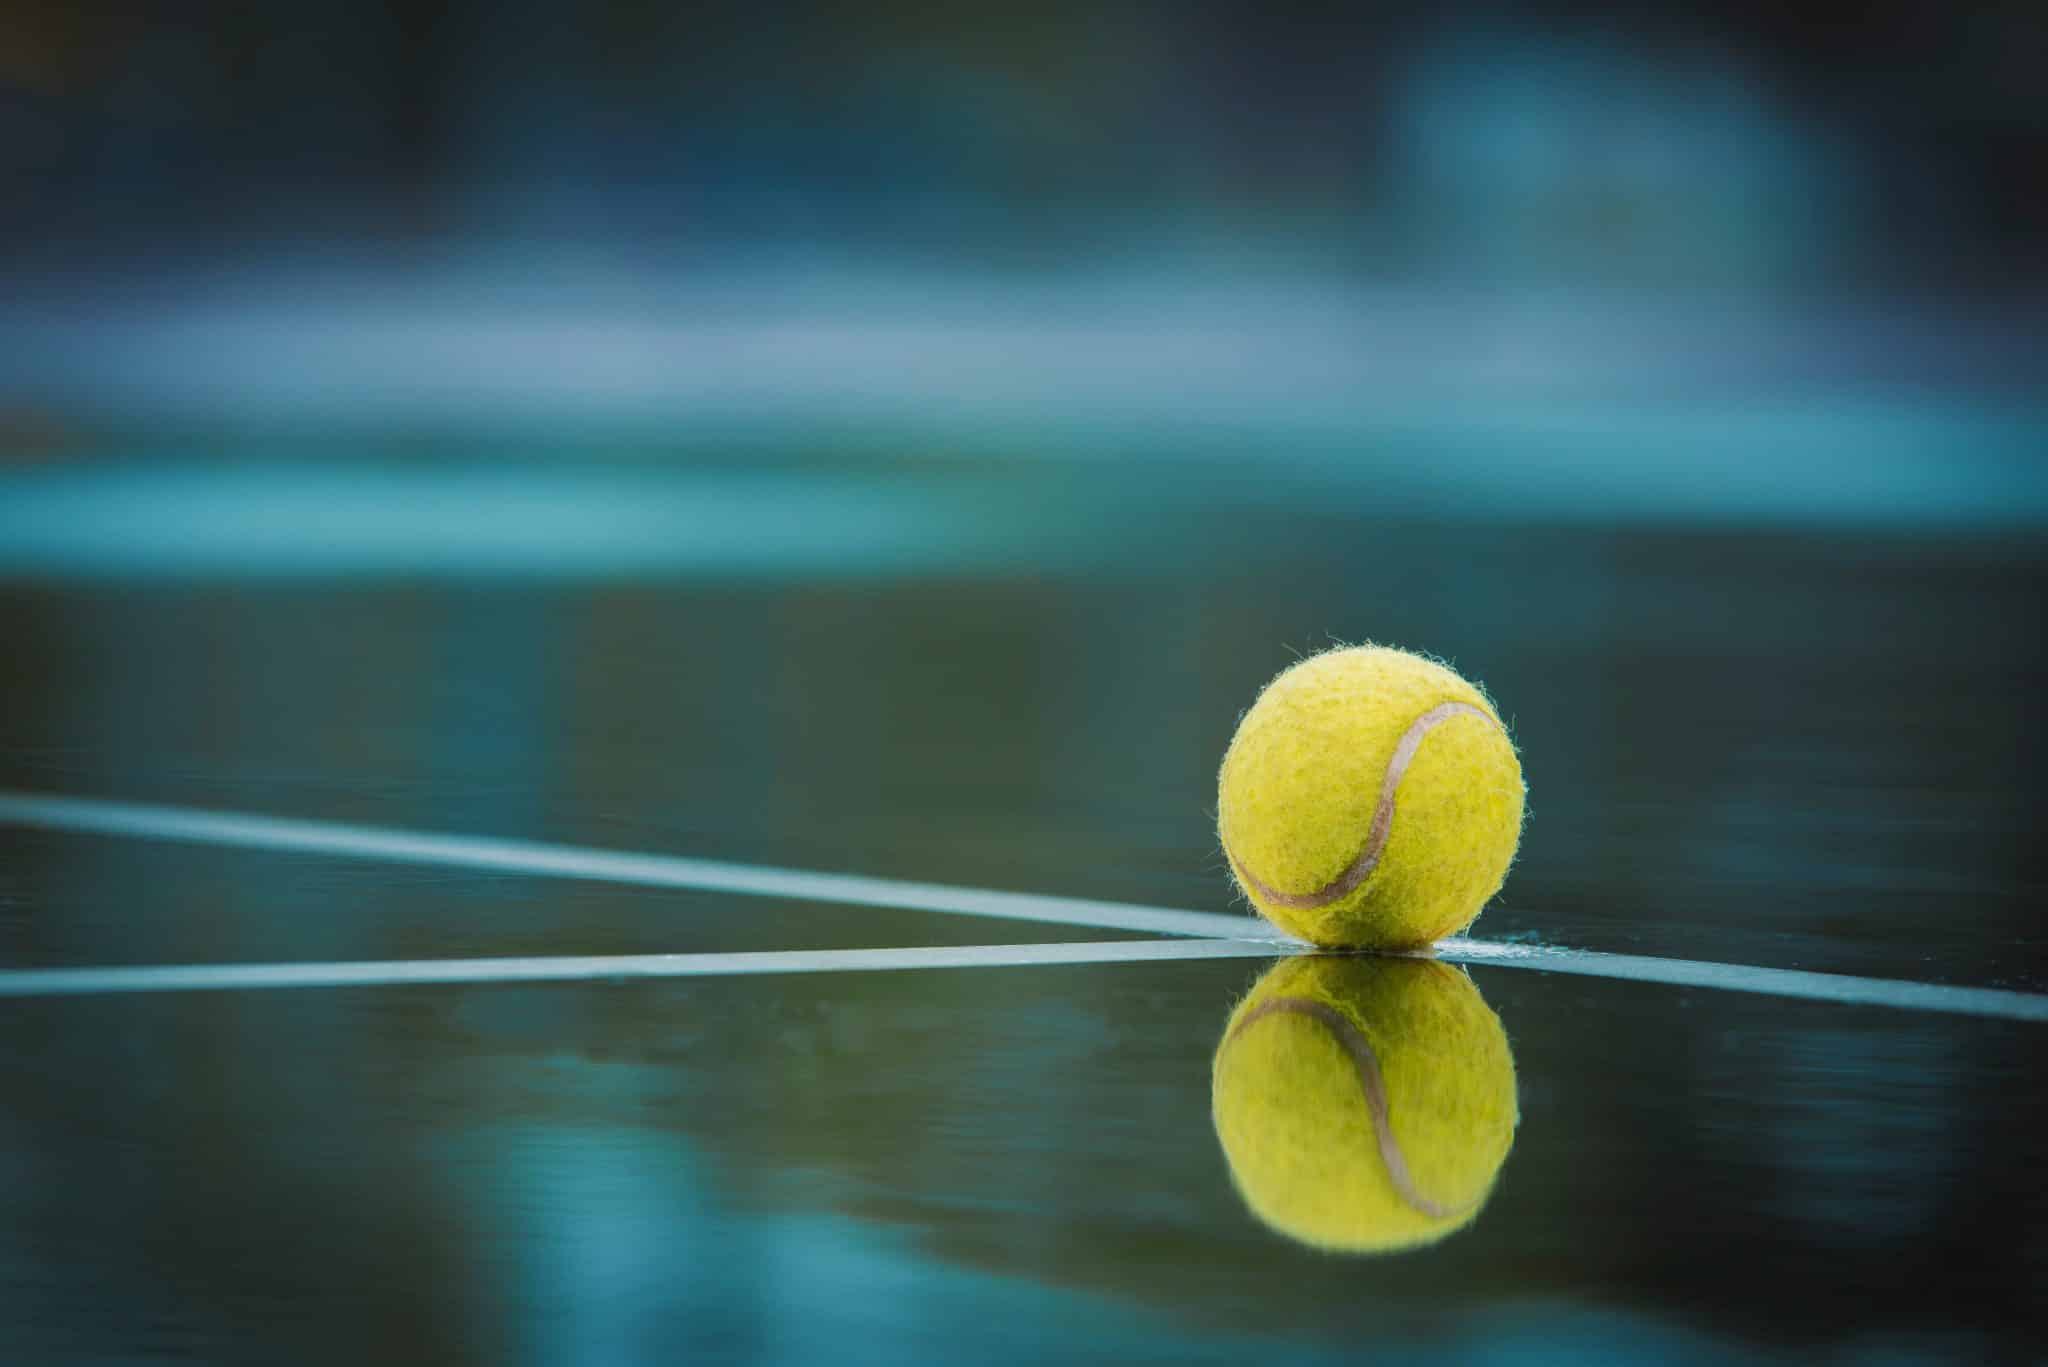 Léčba tenisového lokte: Zkuste našich 9 tipů, které pomohou 2